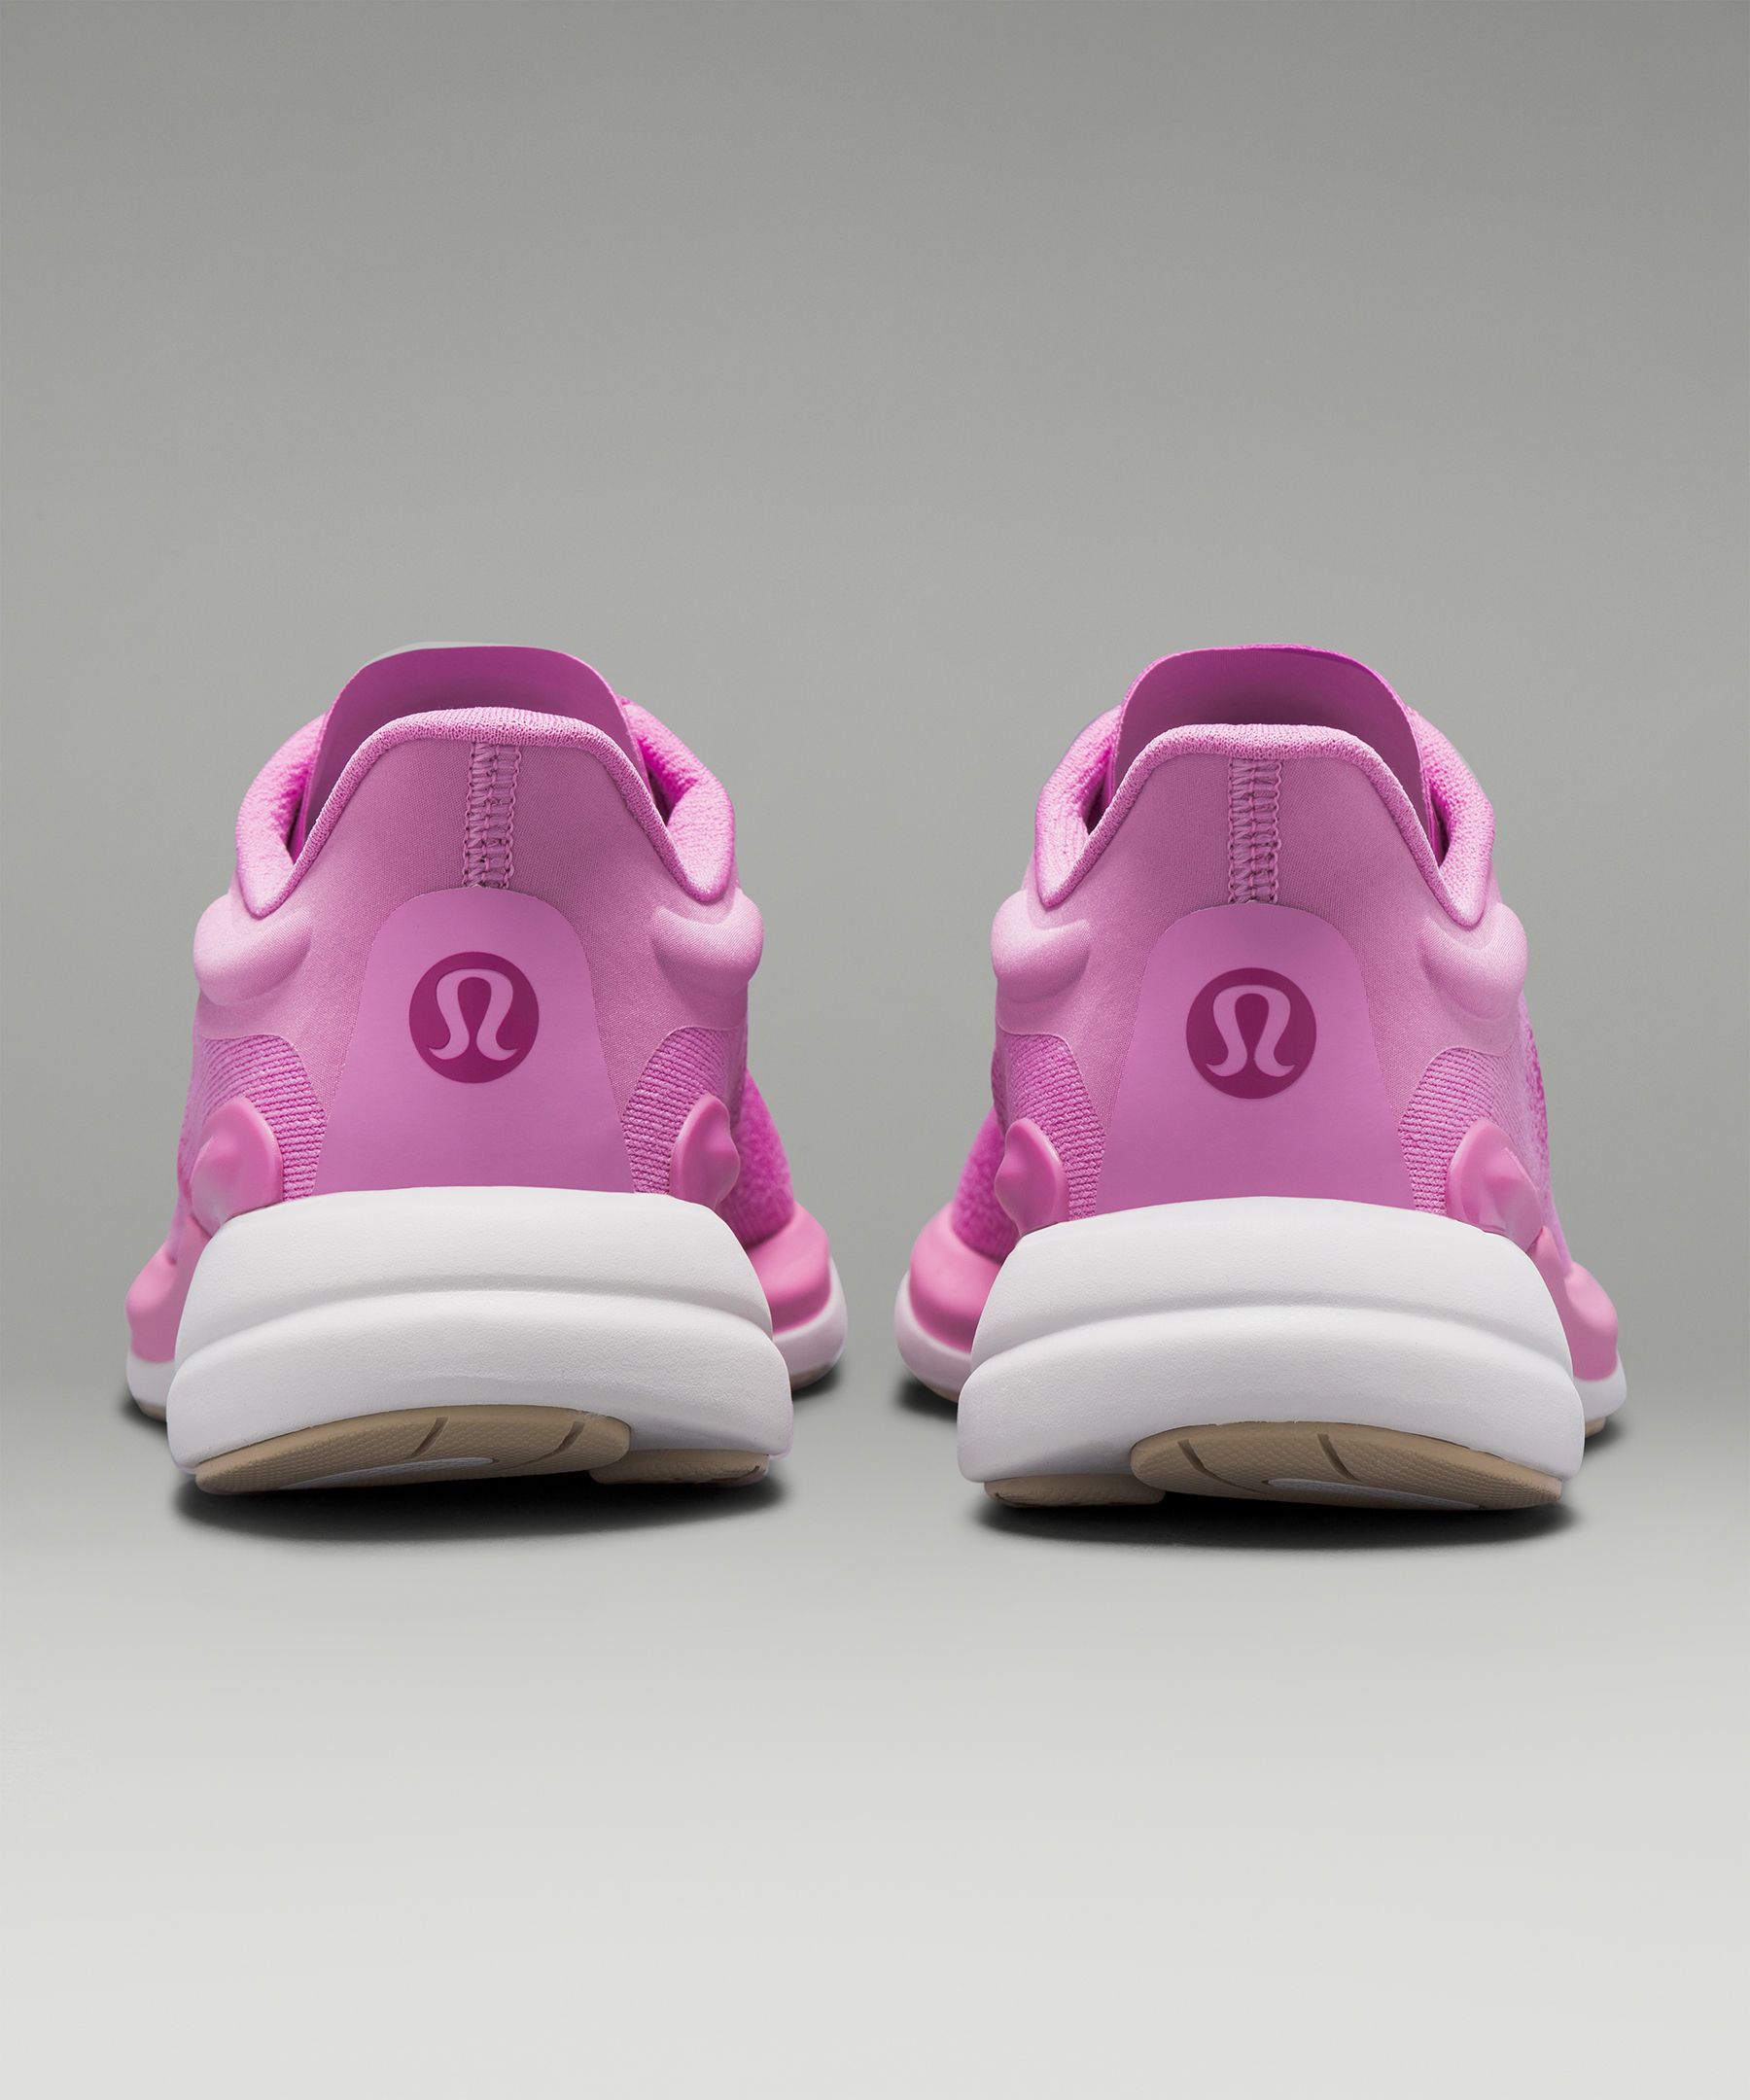 LULULEMON Pink Sneaker Shoe Size 7-1/2 Shoes